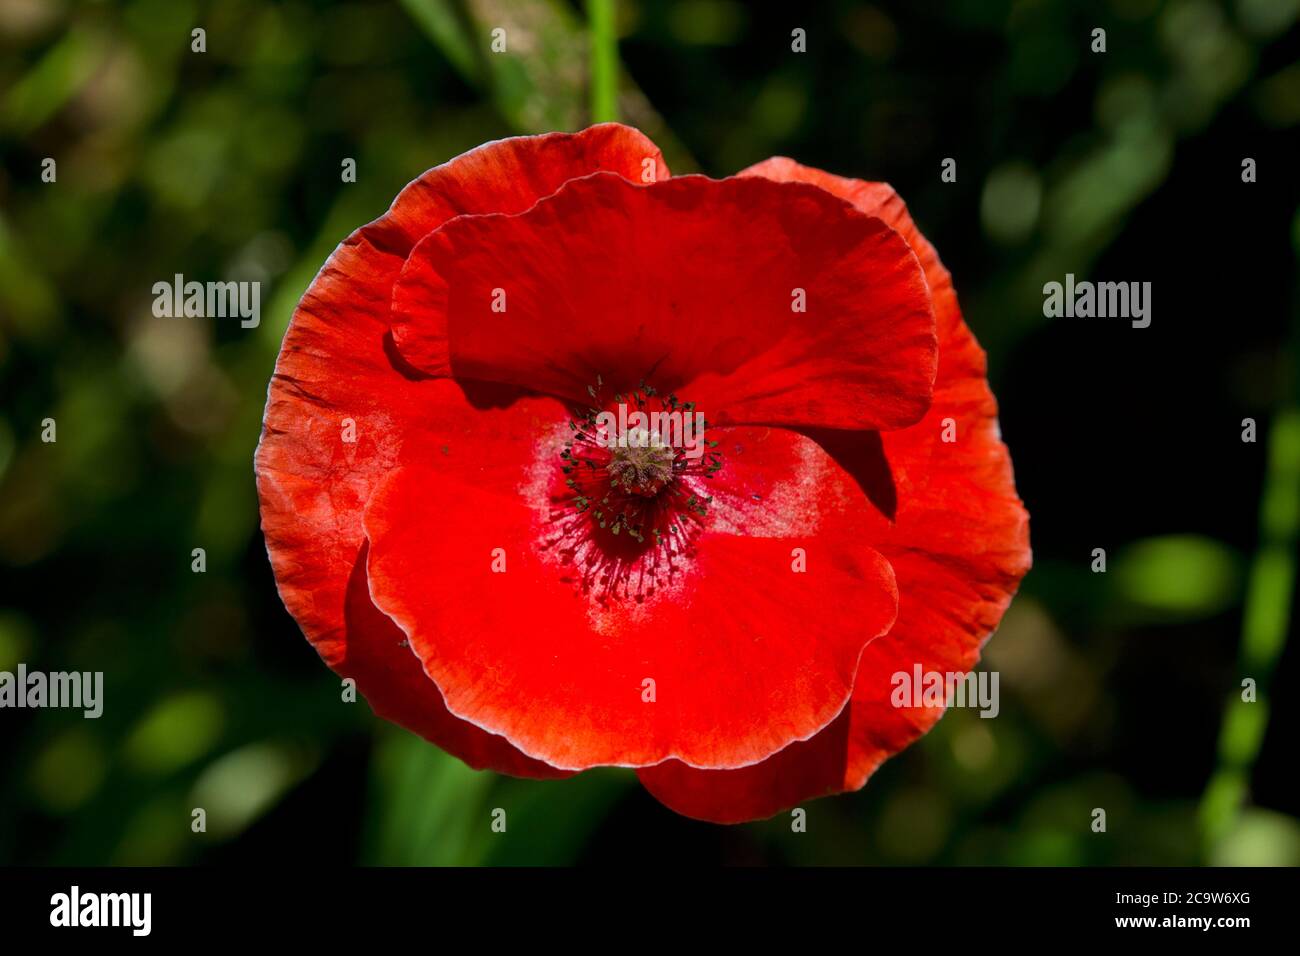 Primer plano de la flor roja viva de la amapola común, también conocida como amapola de Flandes Foto de stock